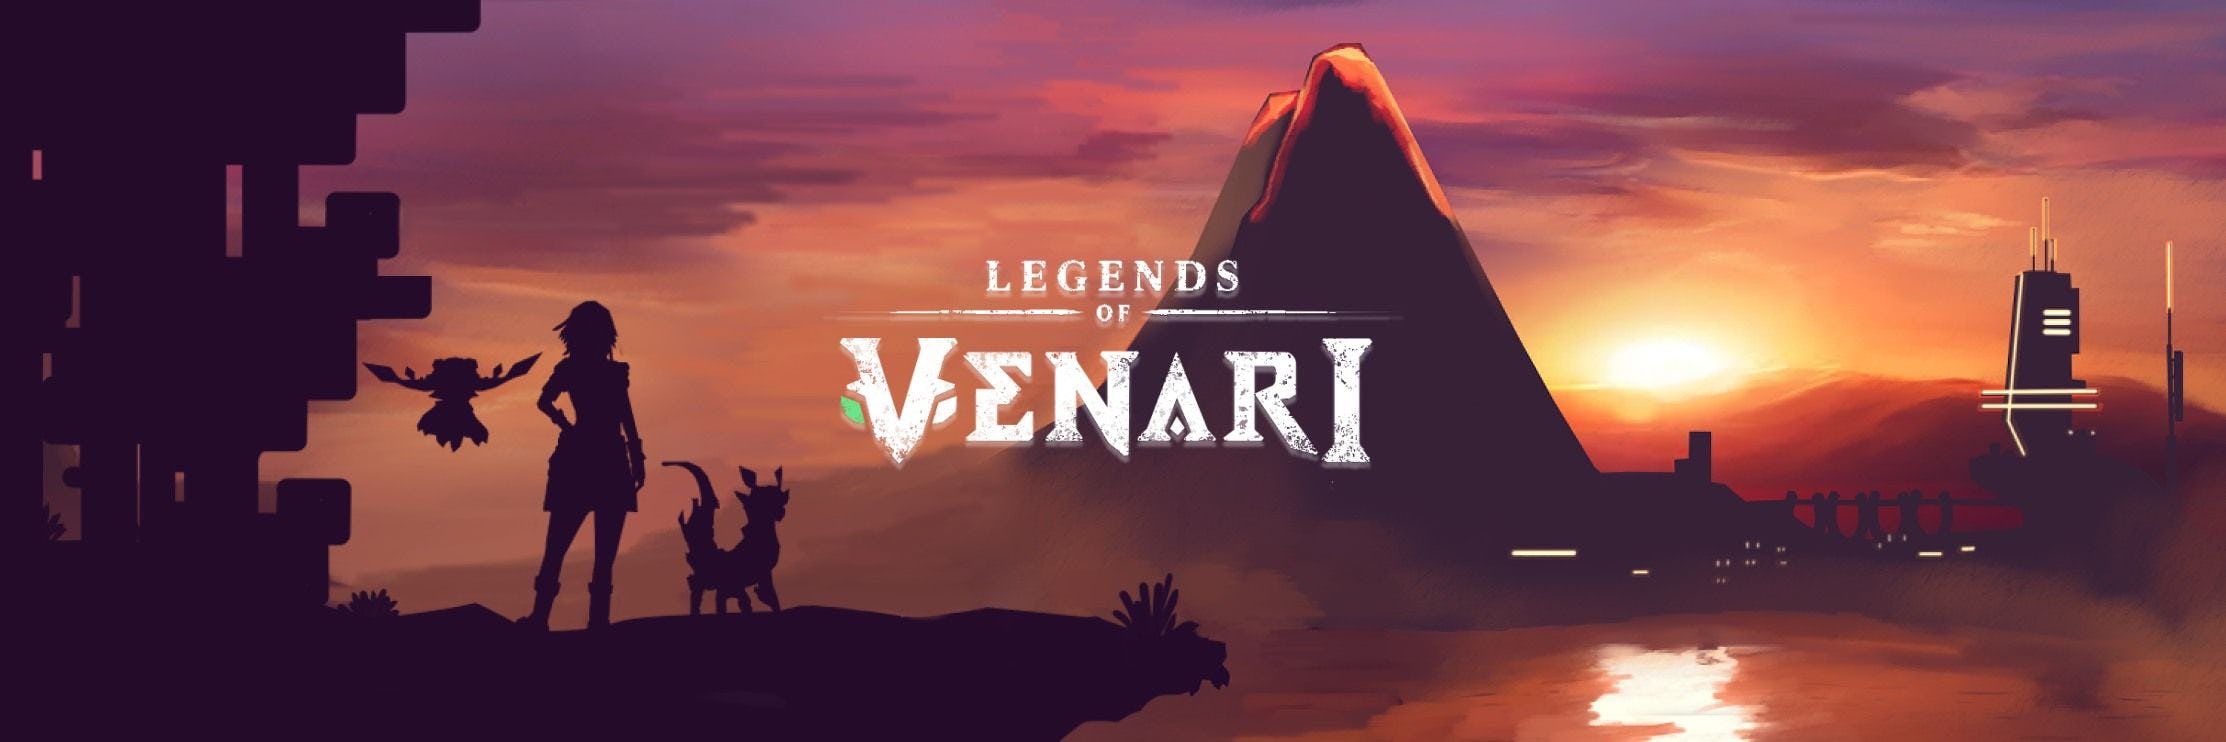 Legends of Venari banner.jpg